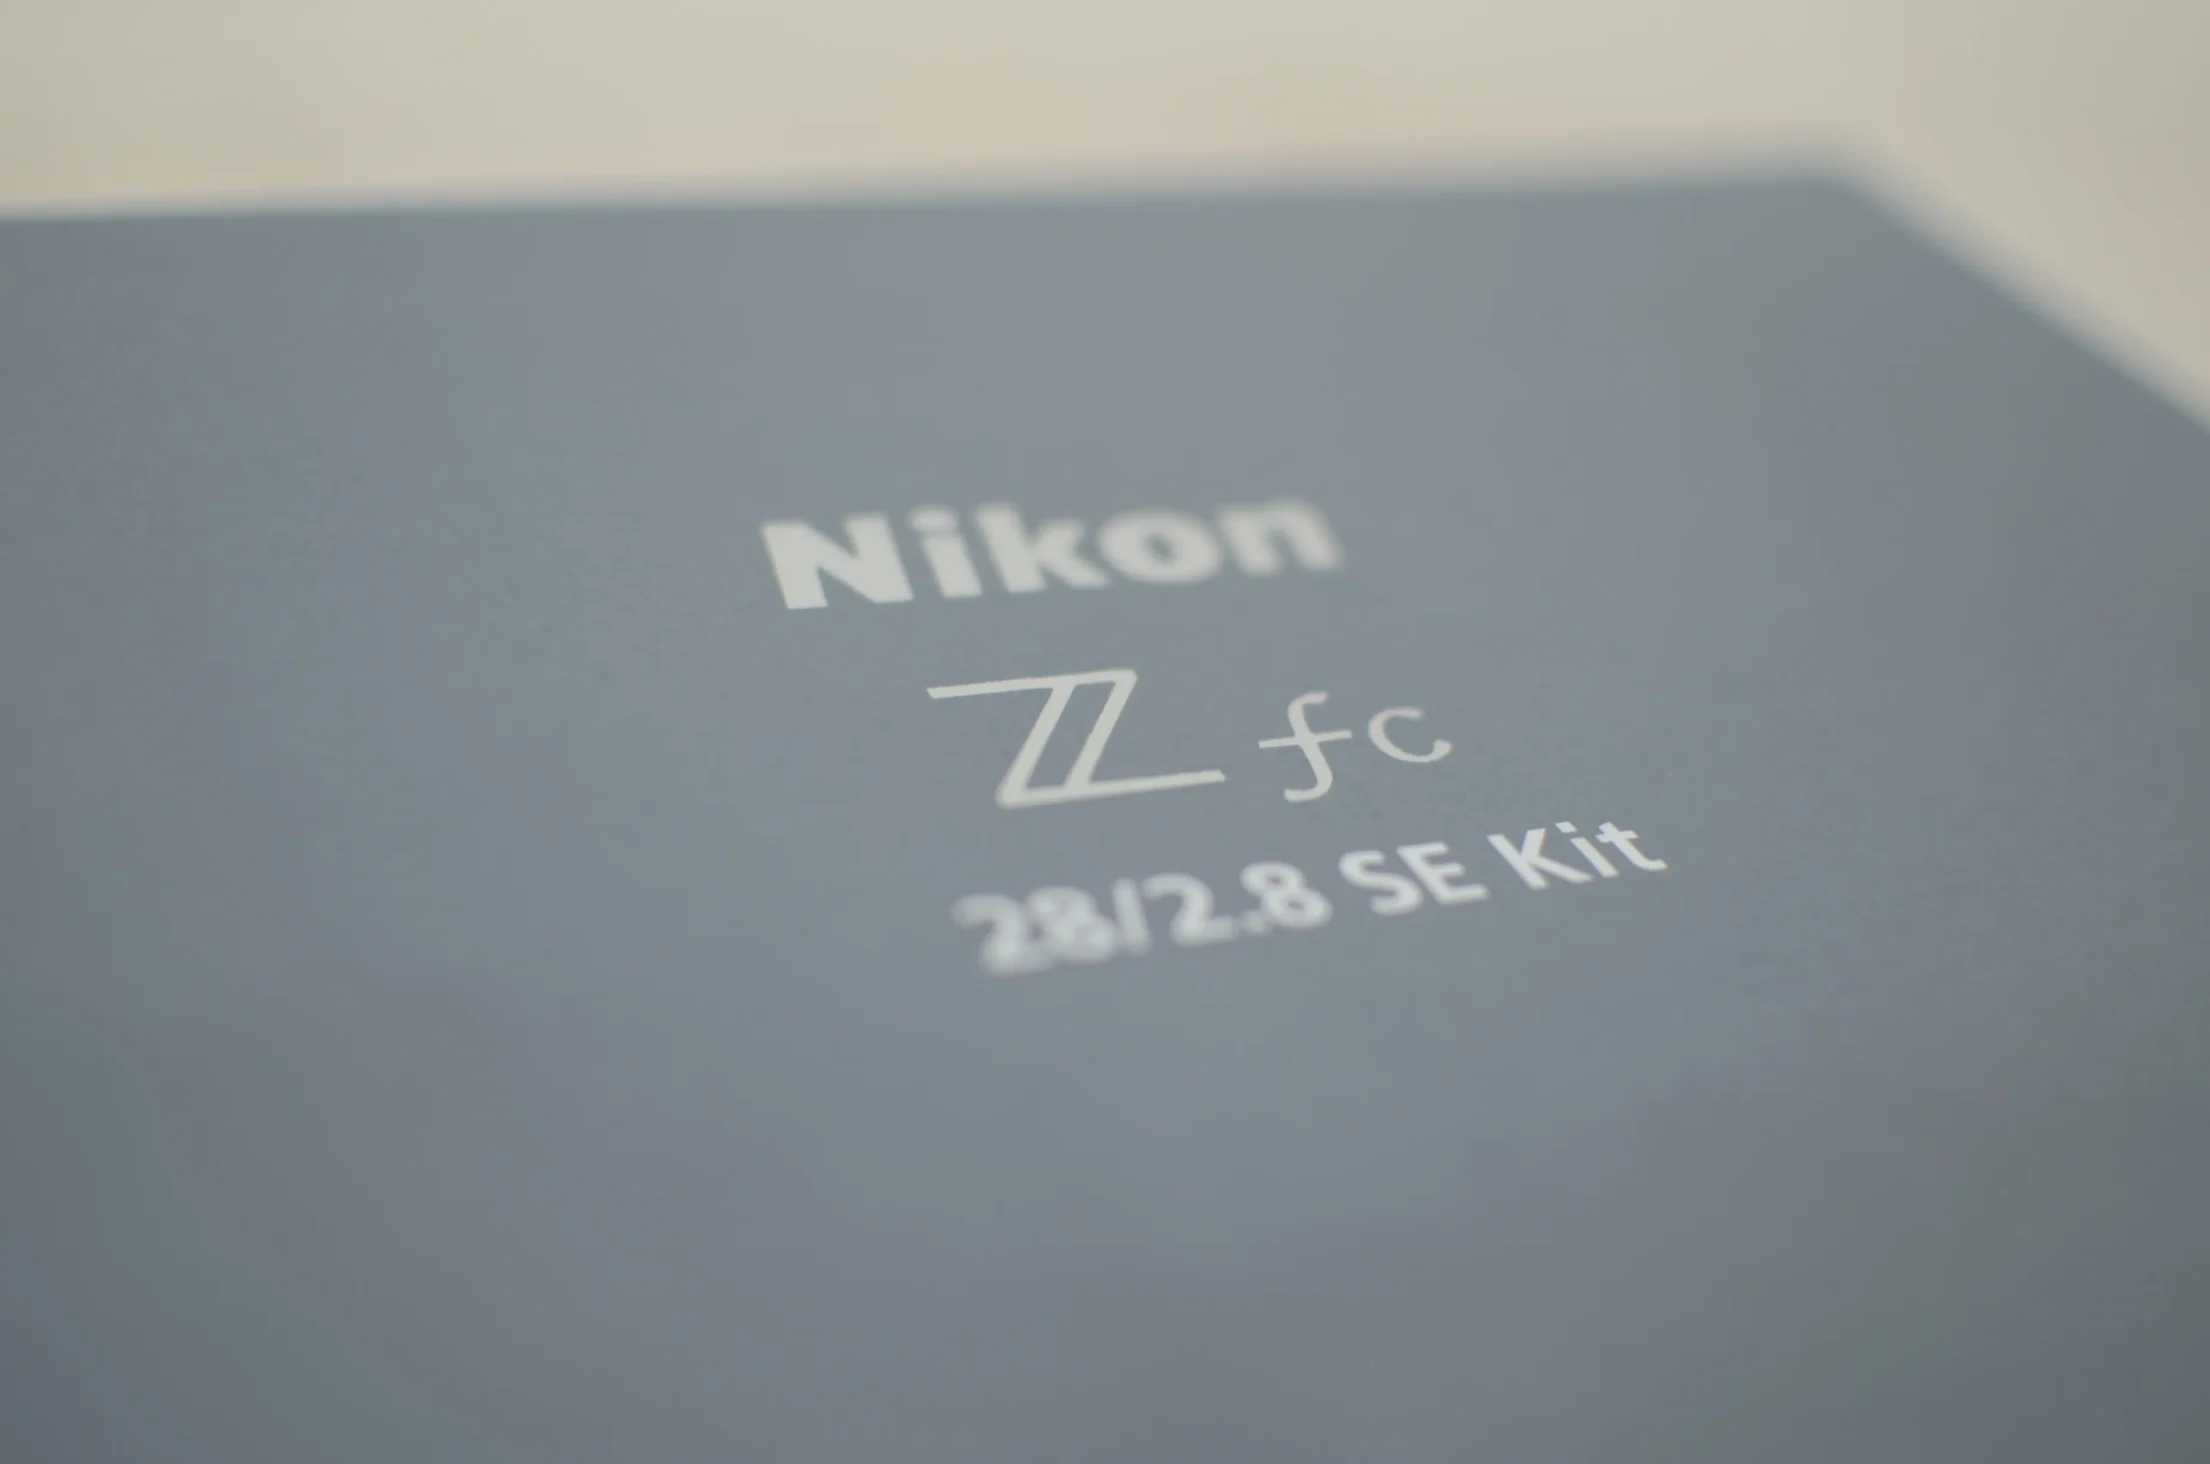 Nikon Z fcの文字がオシャレ・・・！